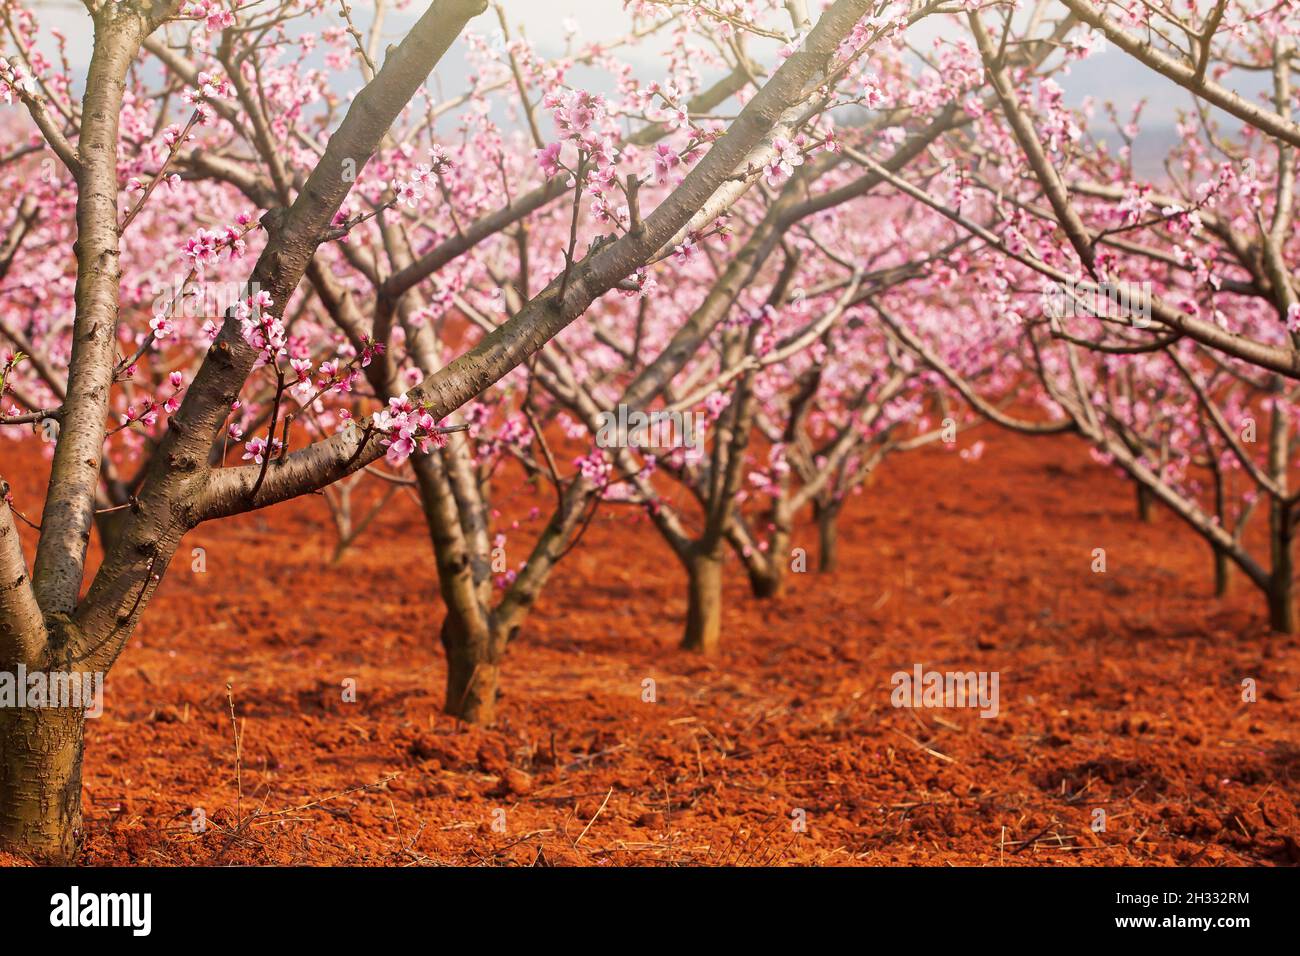 Fleurs de cerisier de pêche en fleurs sur les branches des arbres, fleurs roses en pleine floraison.Prune chinoise ou abricot japonais.Verger de cerisier en fleur de printemps. Banque D'Images